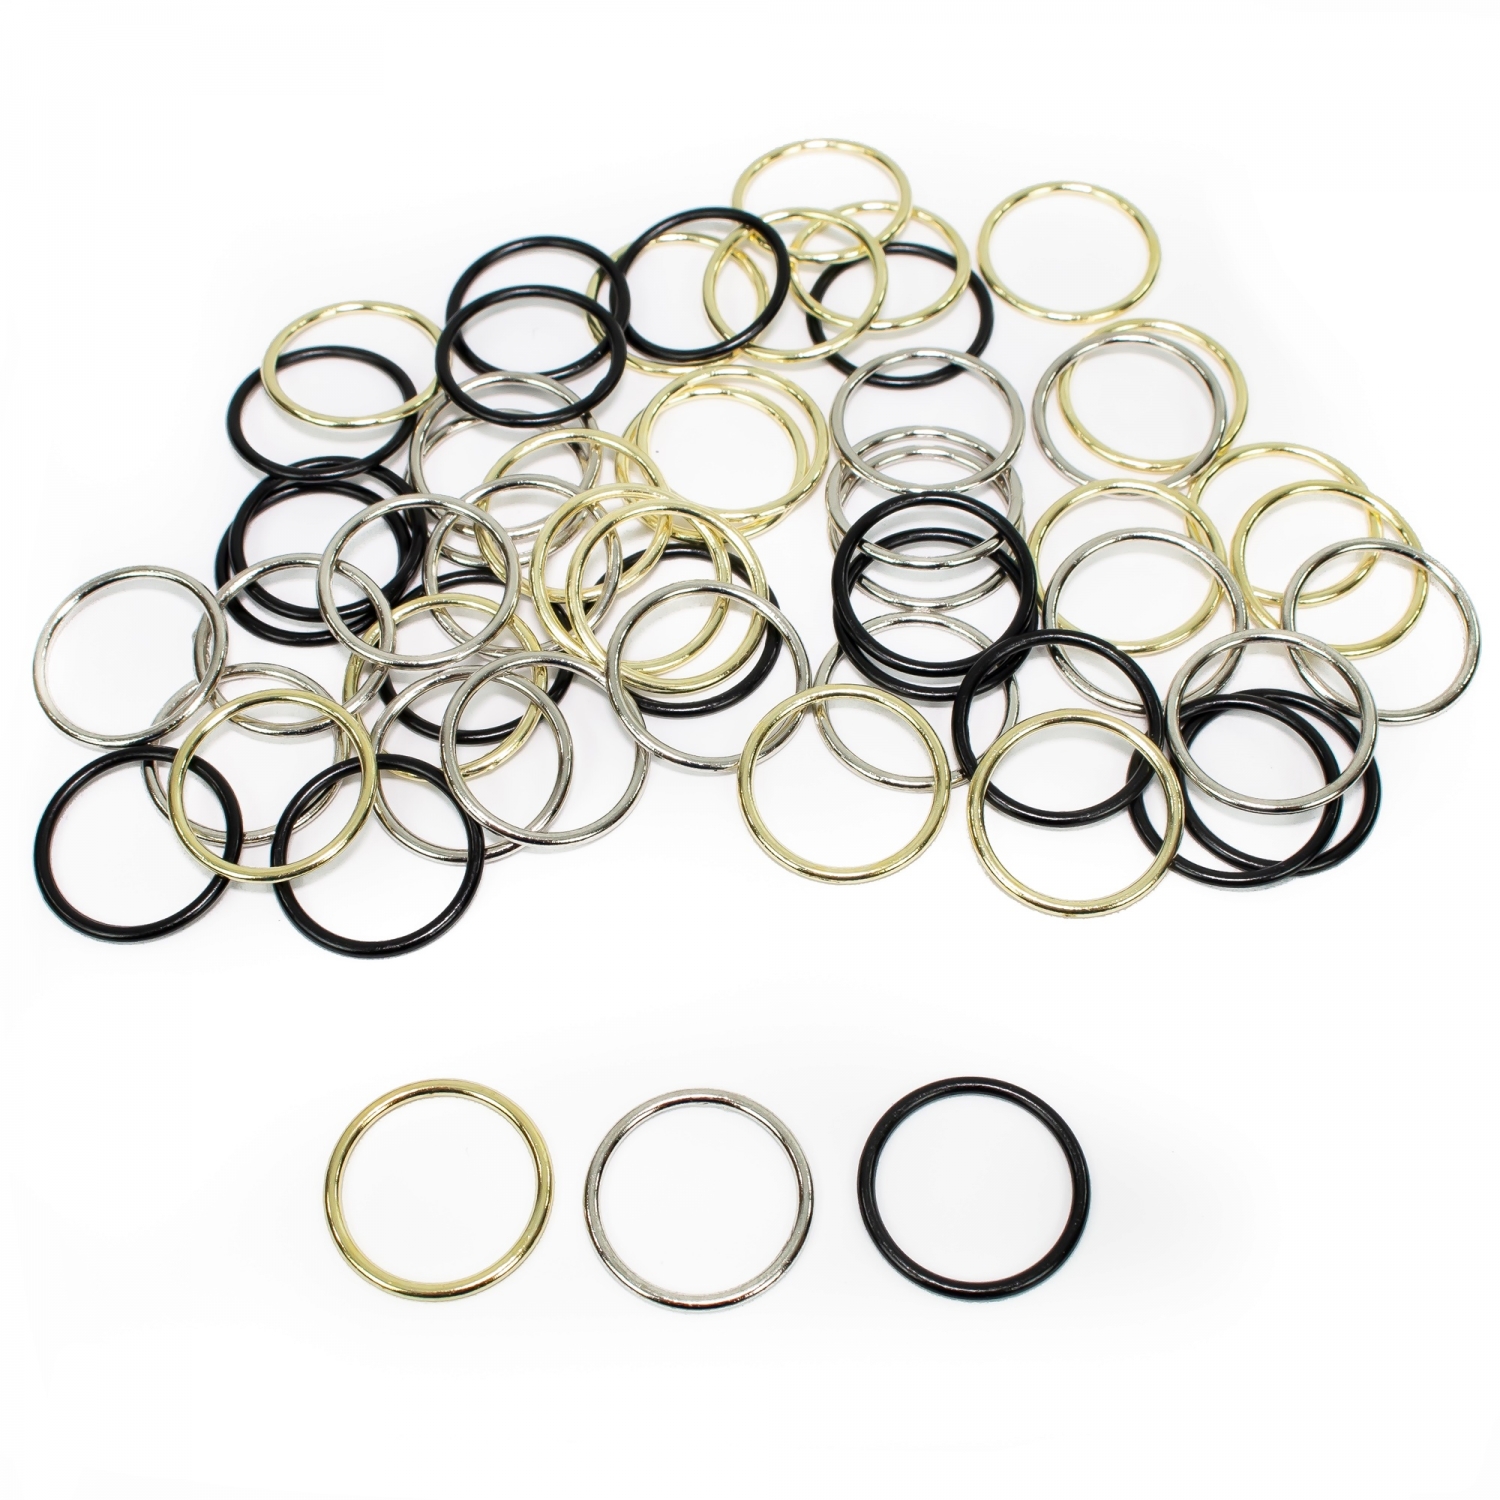 Metal Bra Rings, interior diameter 18 mm (100 pcs/bag)Cod: MH18